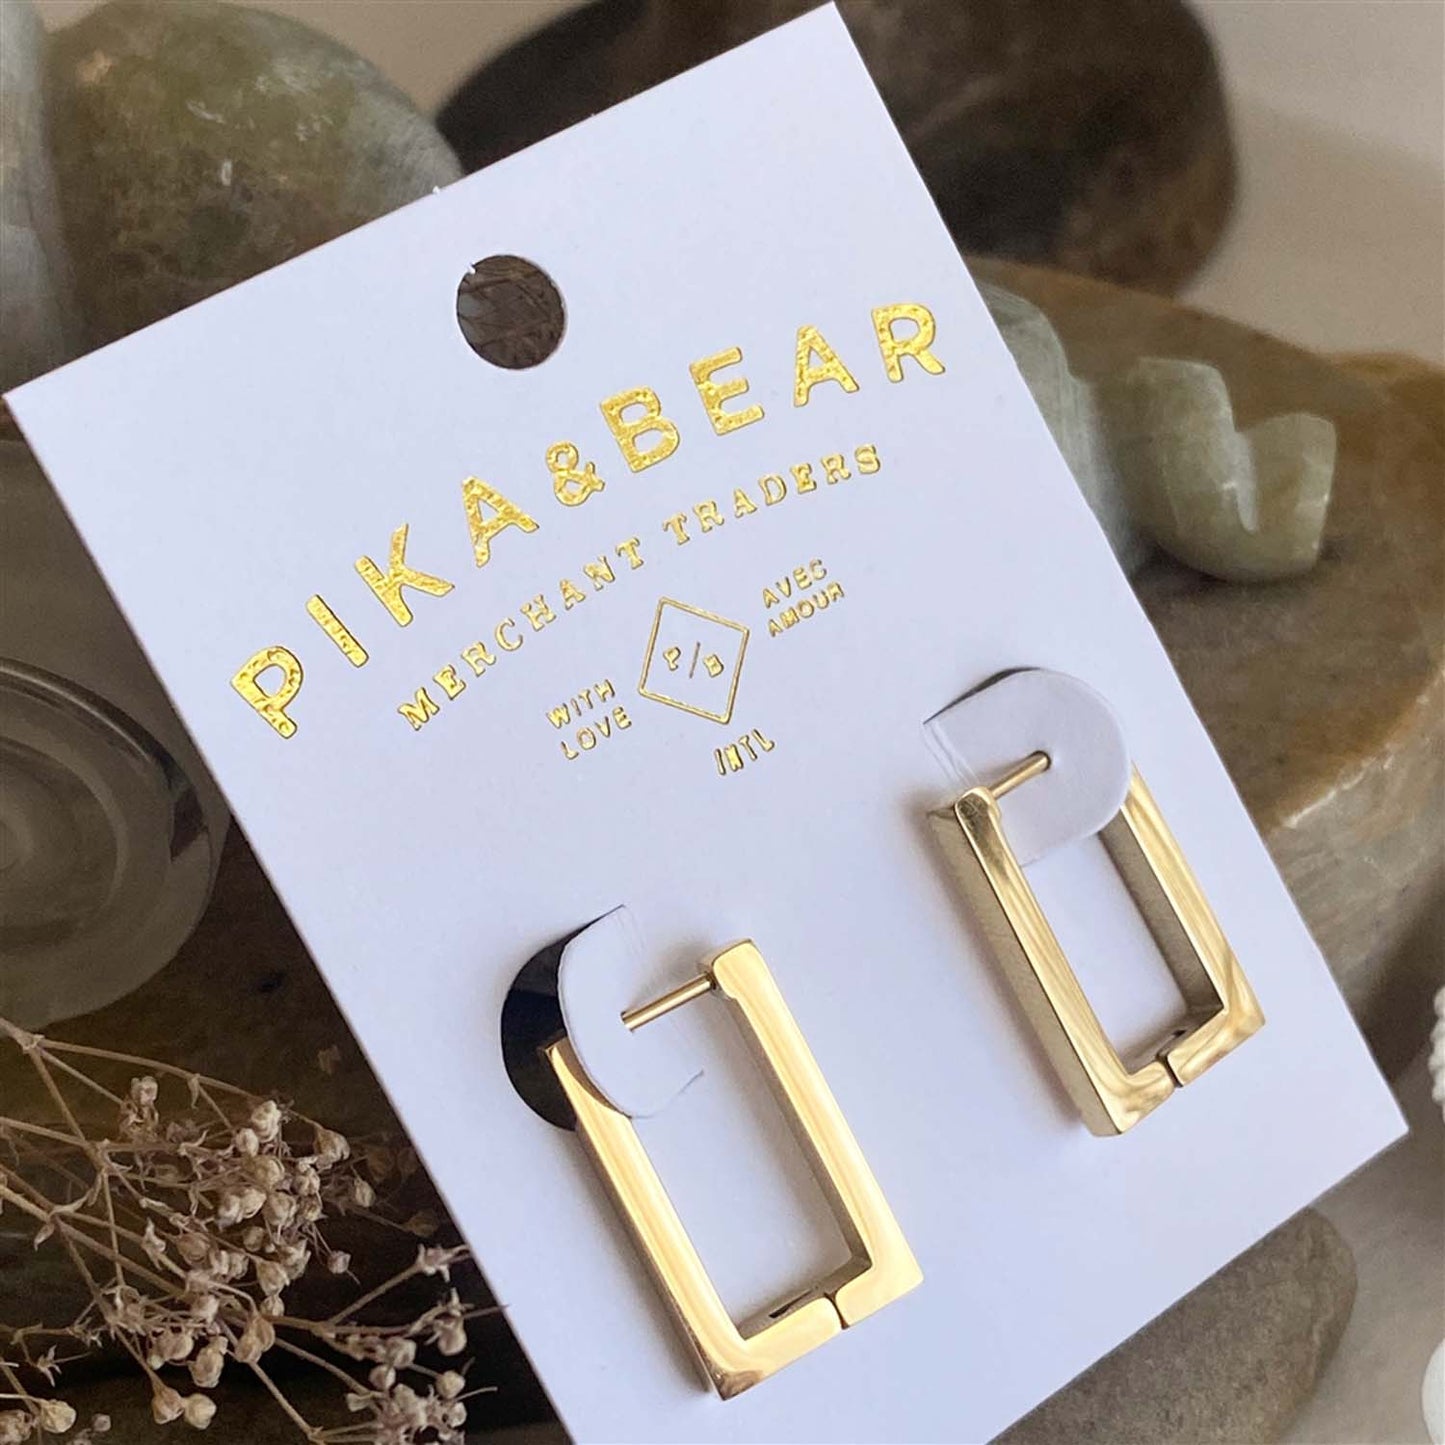 Brut Rectangular Hinge Hoop Earrings in Gold